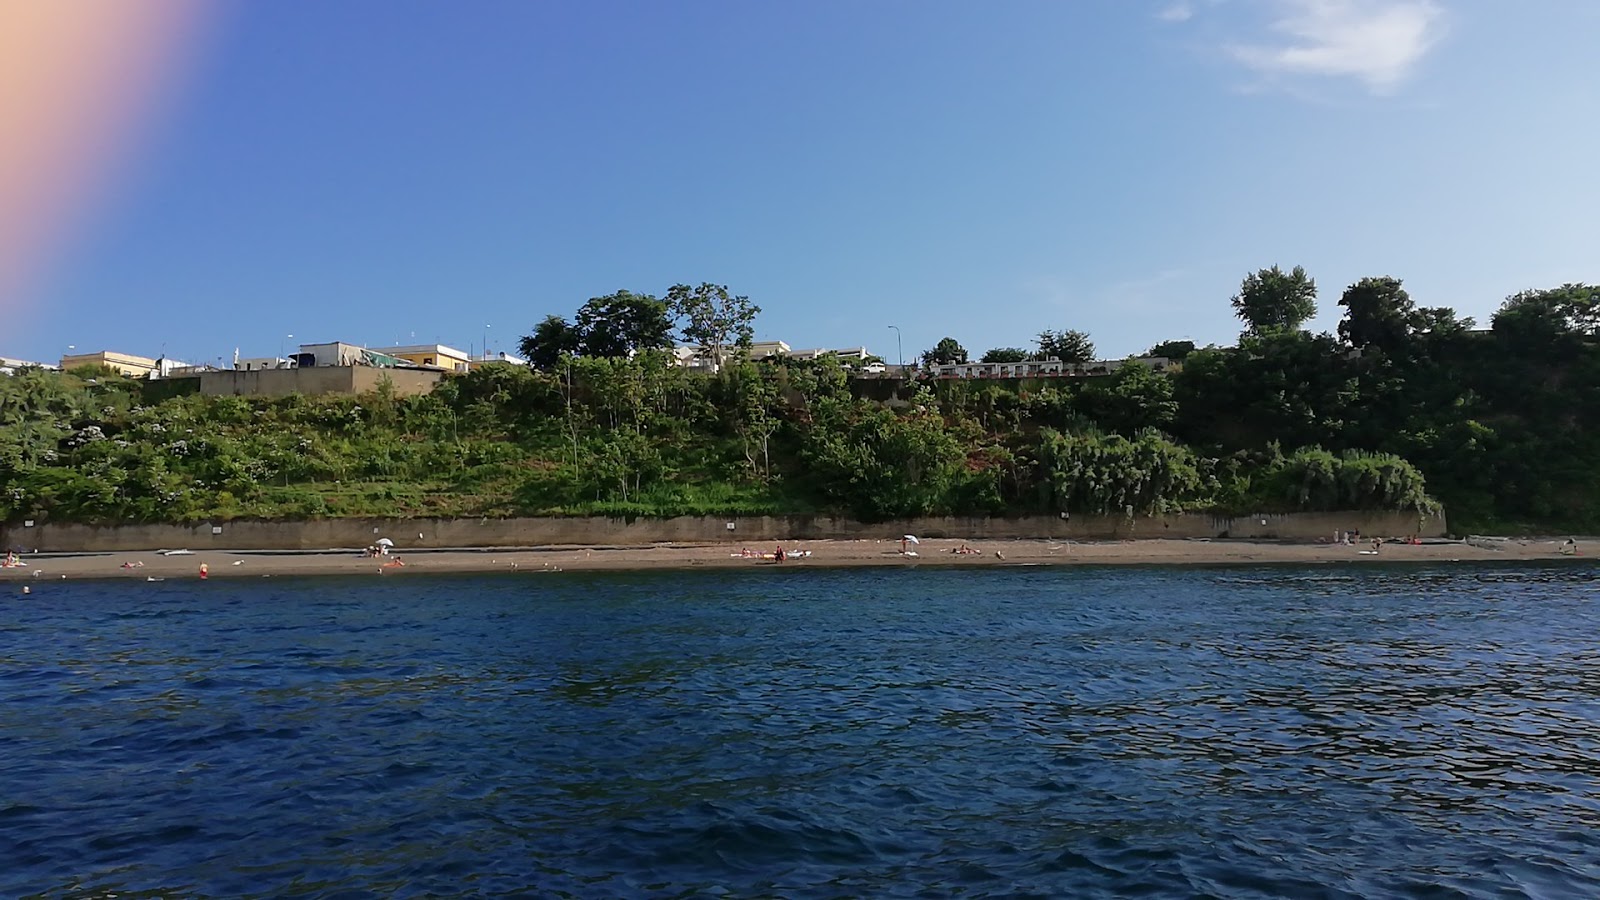 Foto av Spiaggia di Silurenza med hög nivå av renlighet